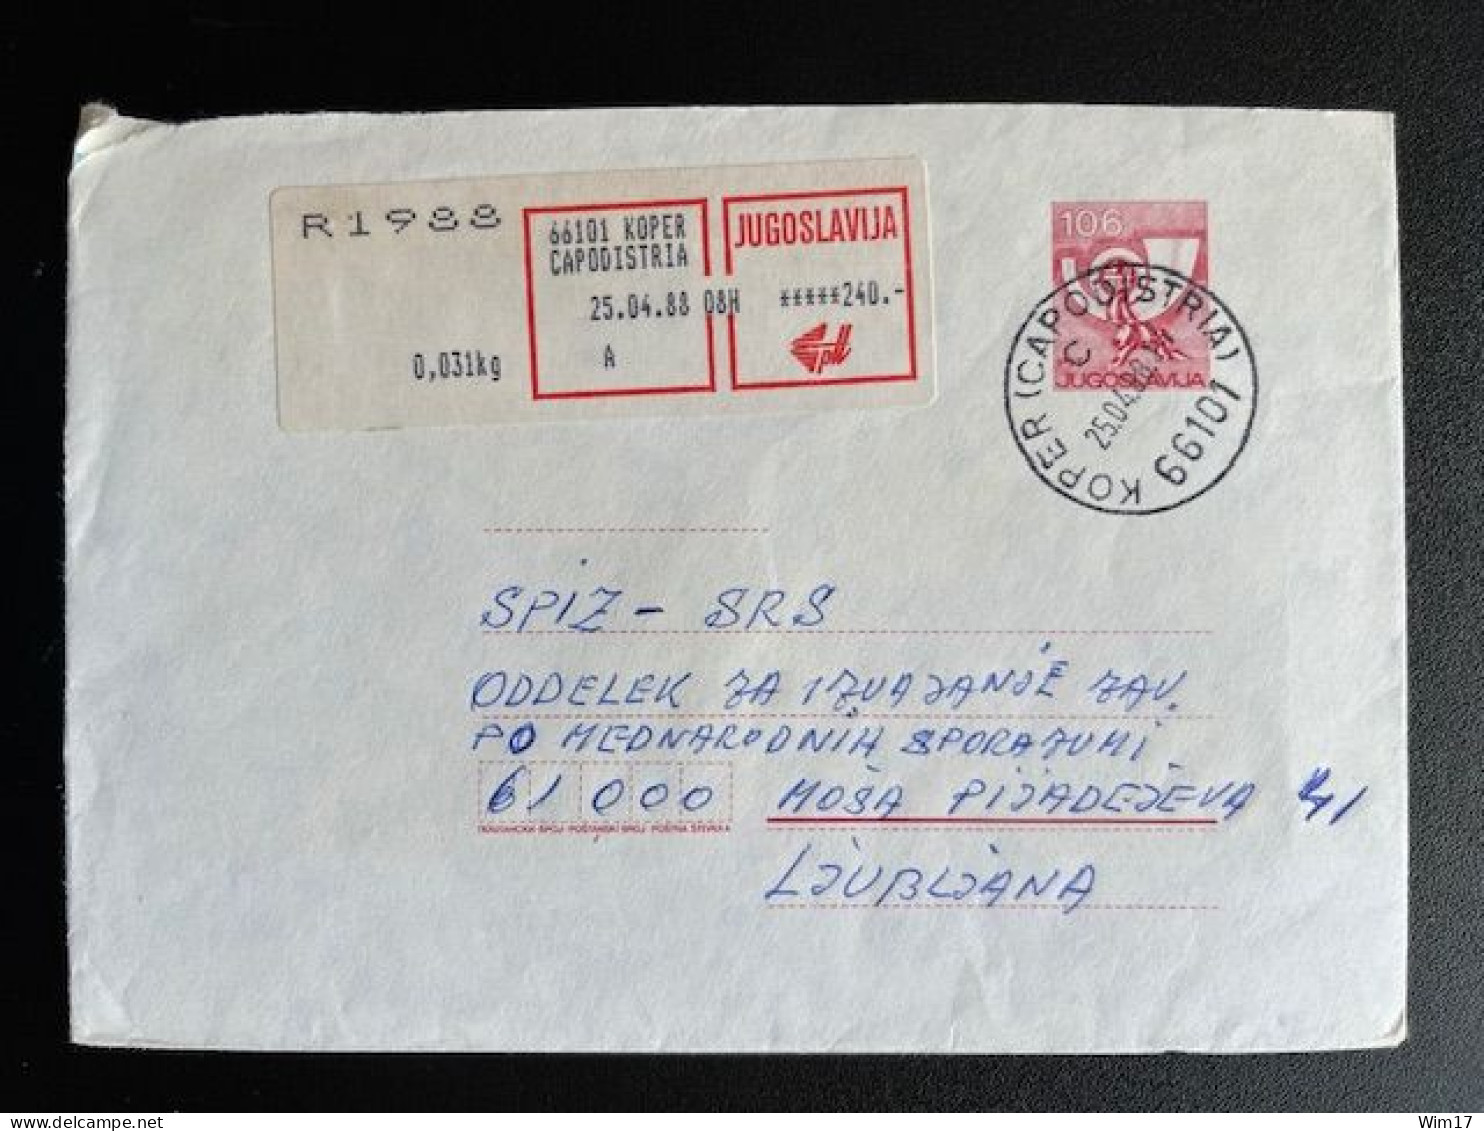 JUGOSLAVIJA YUGOSLAVIA 1988 REGISTERED LETTER KOPER CAPODISTRIA TO LJUBLJANA 25-04-1988 - Lettres & Documents